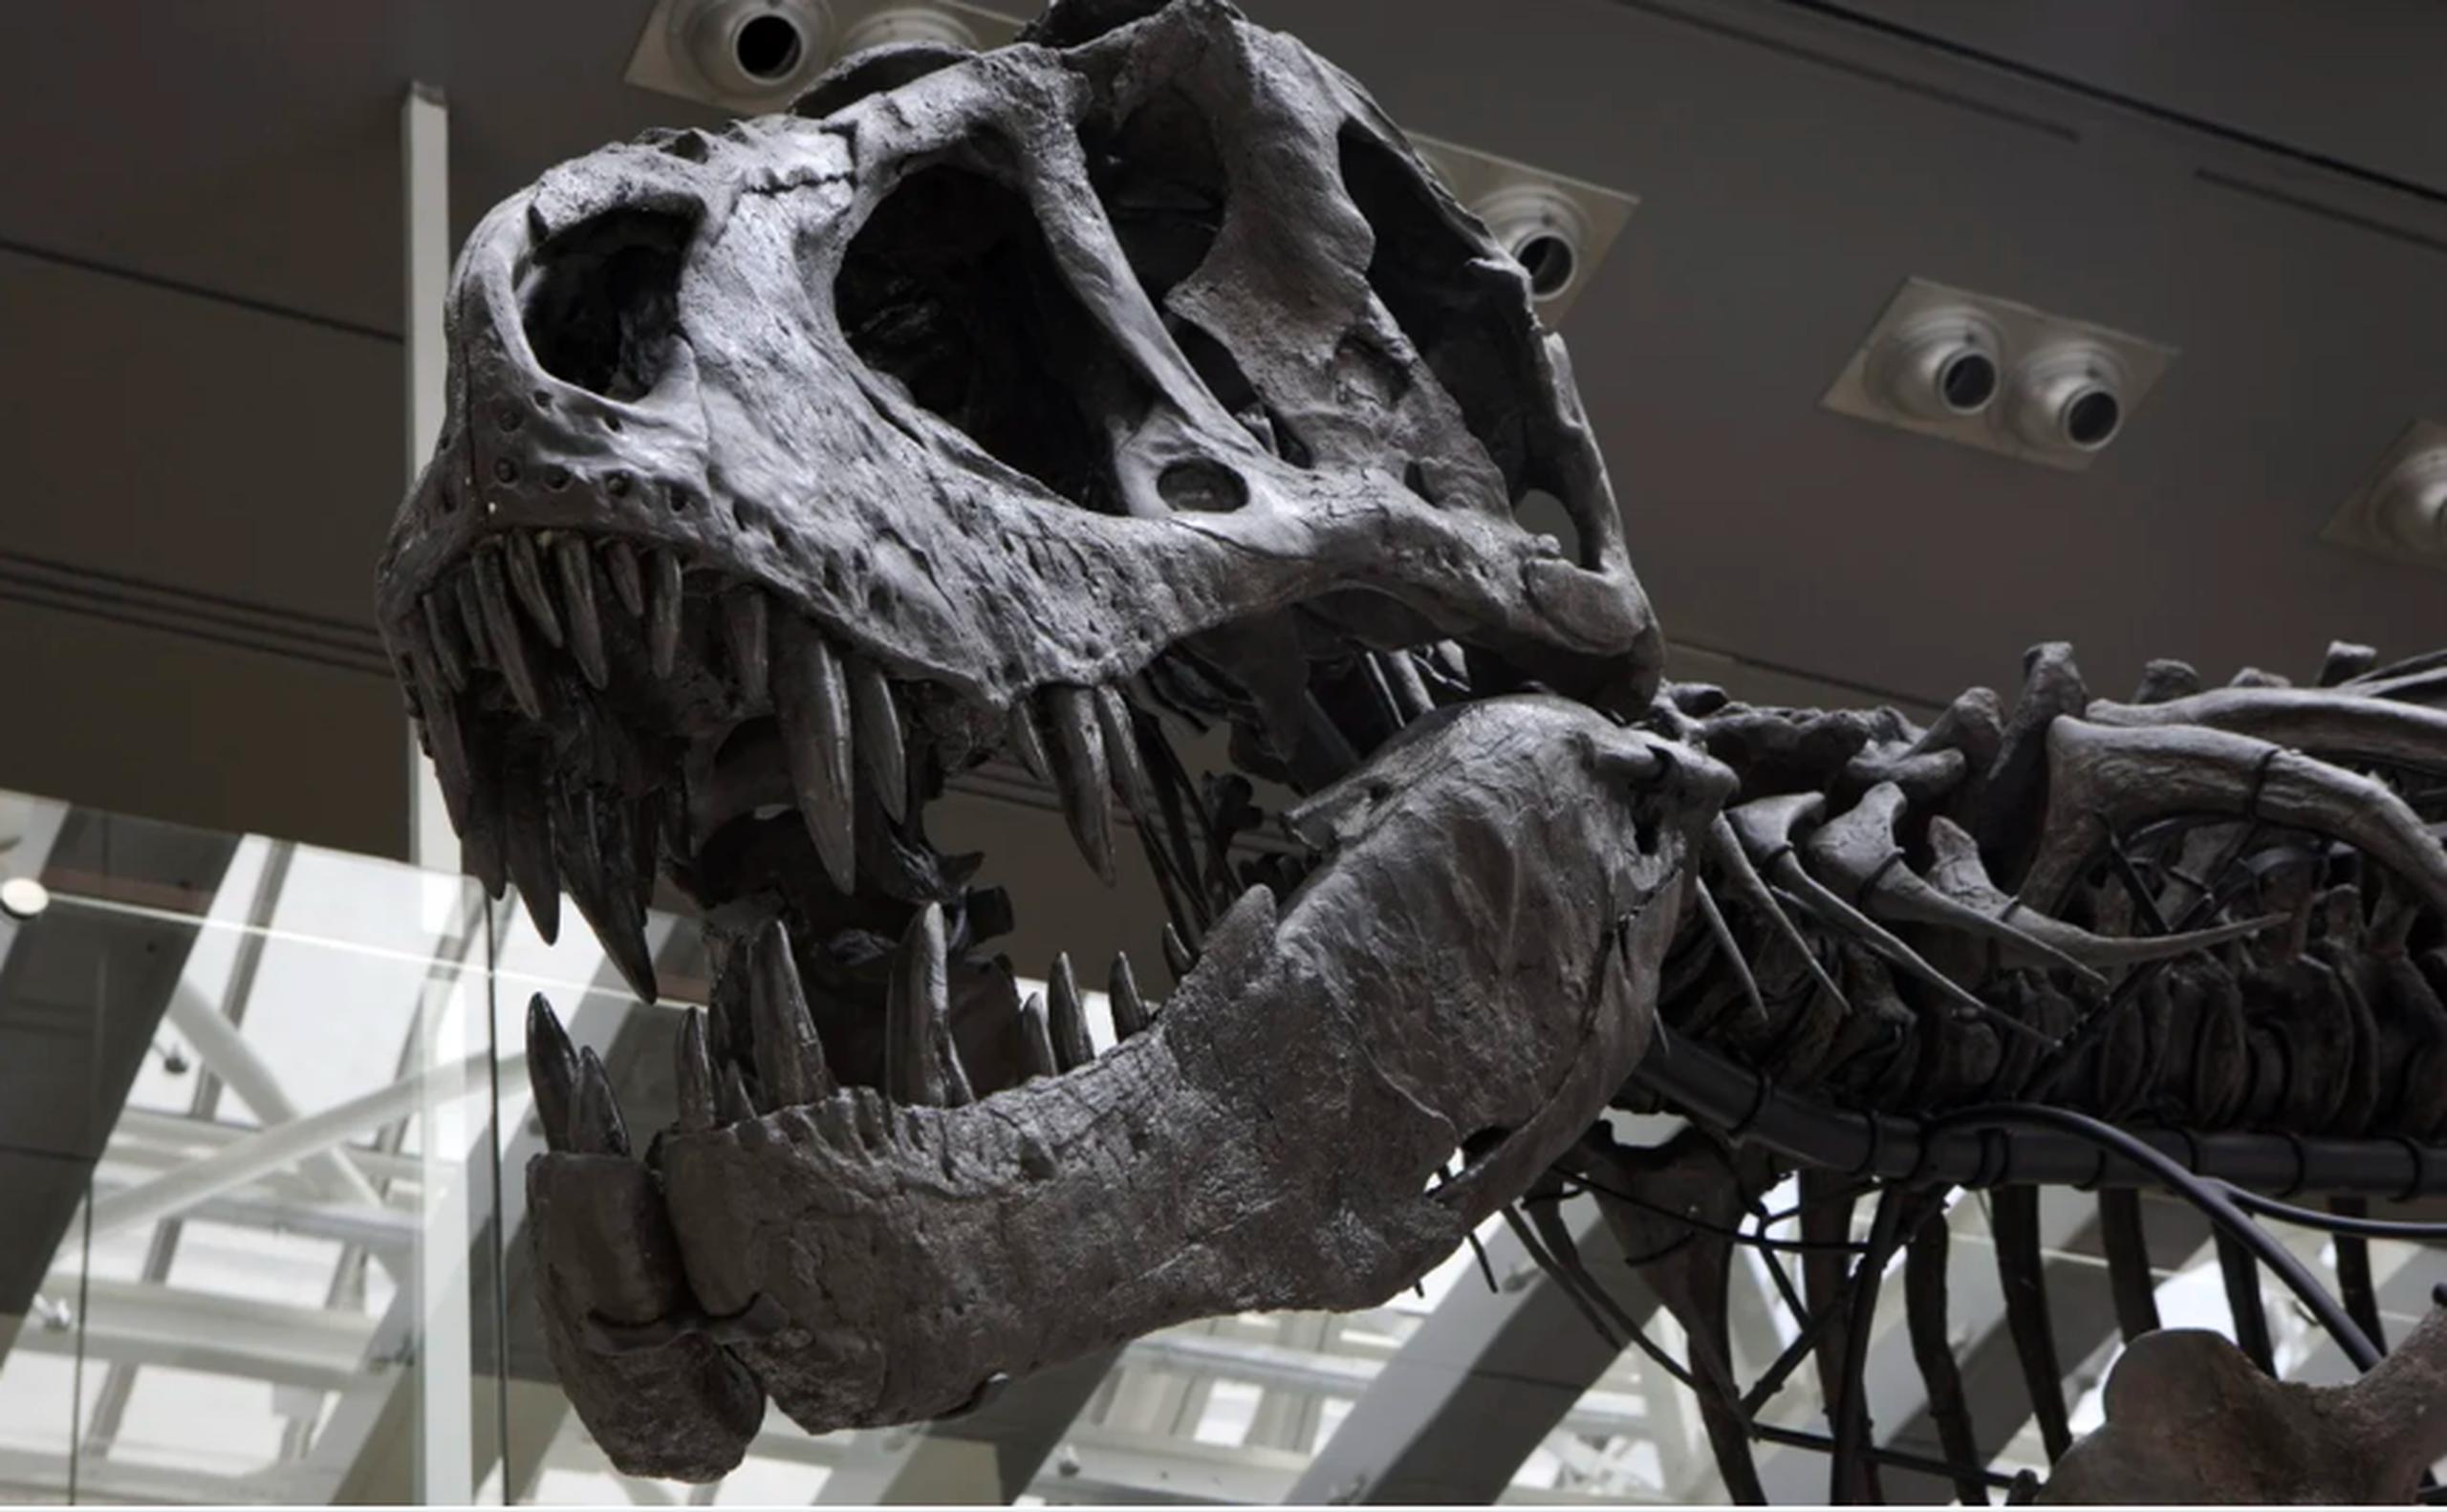 La tendencia de subastar esqueletos de dinosaurios preocupa a varios expertos y científicos.